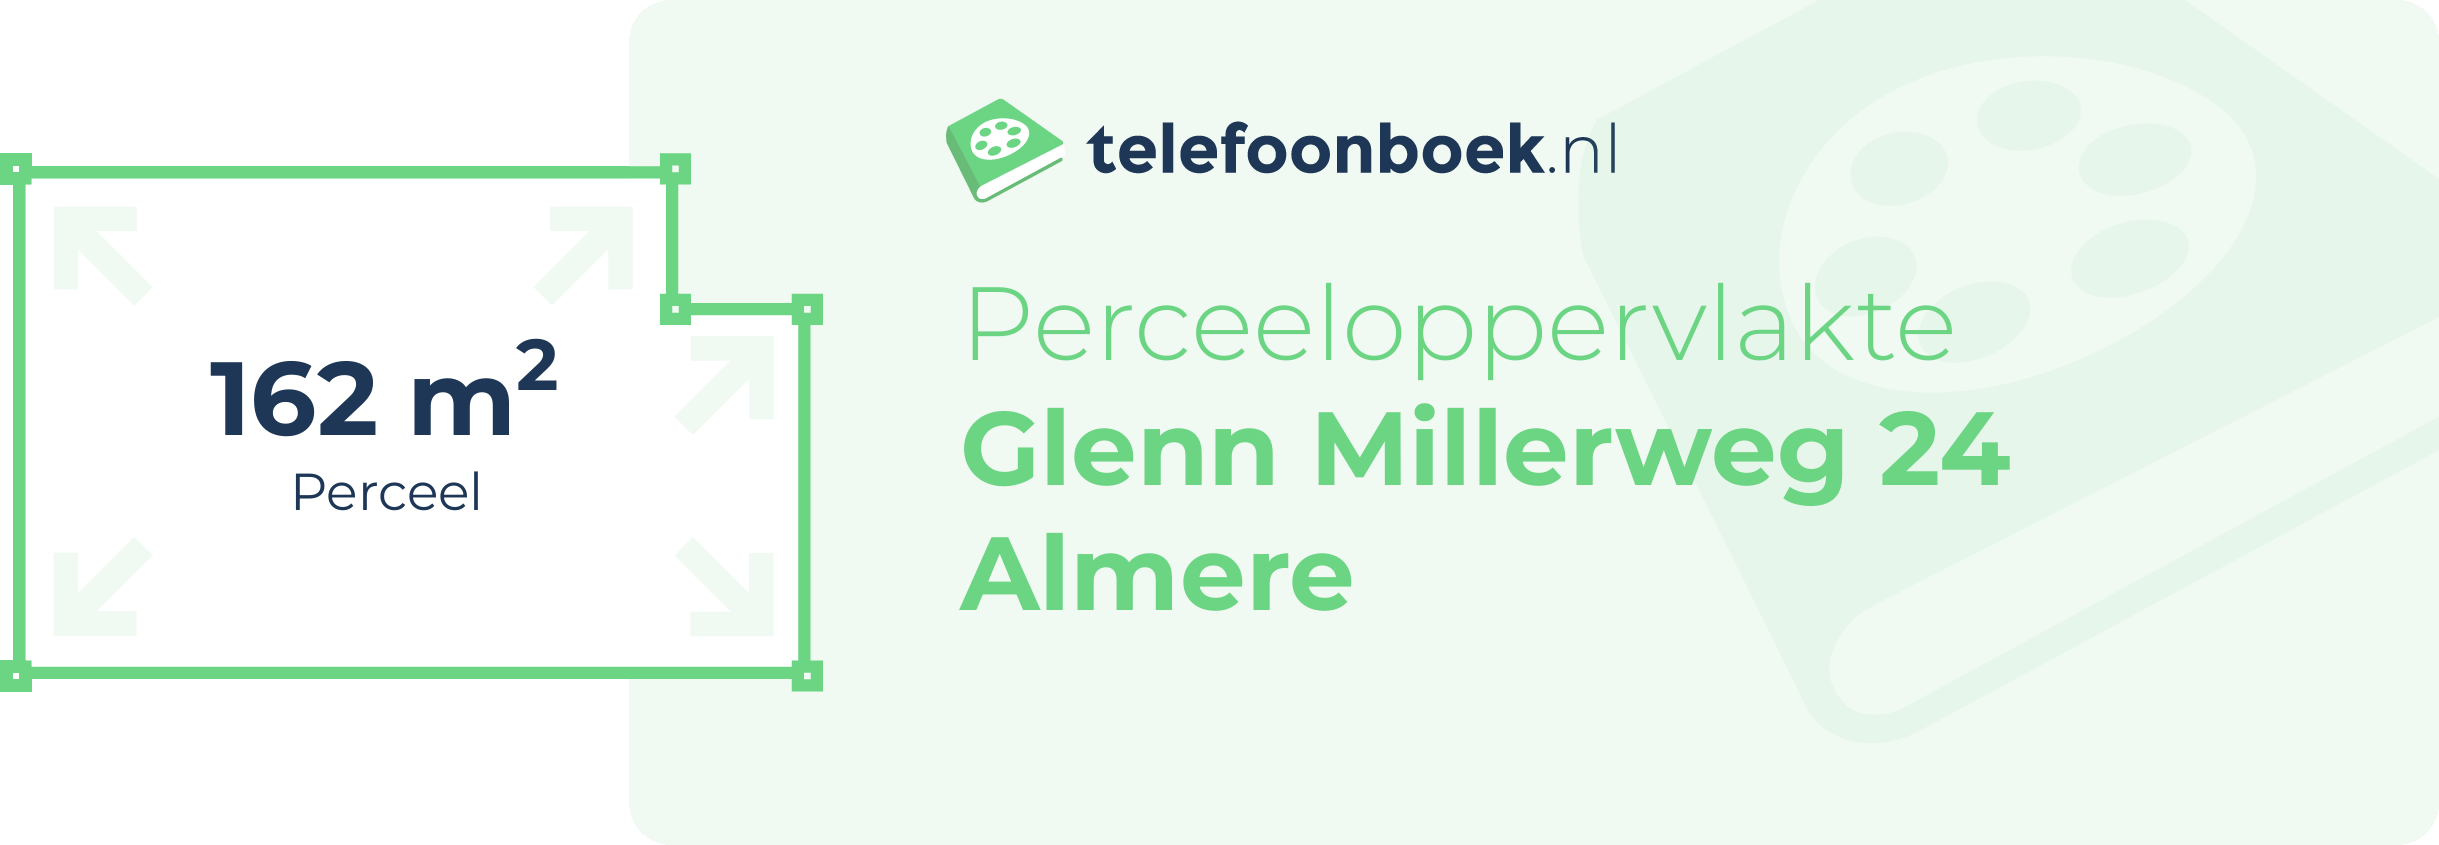 Perceeloppervlakte Glenn Millerweg 24 Almere